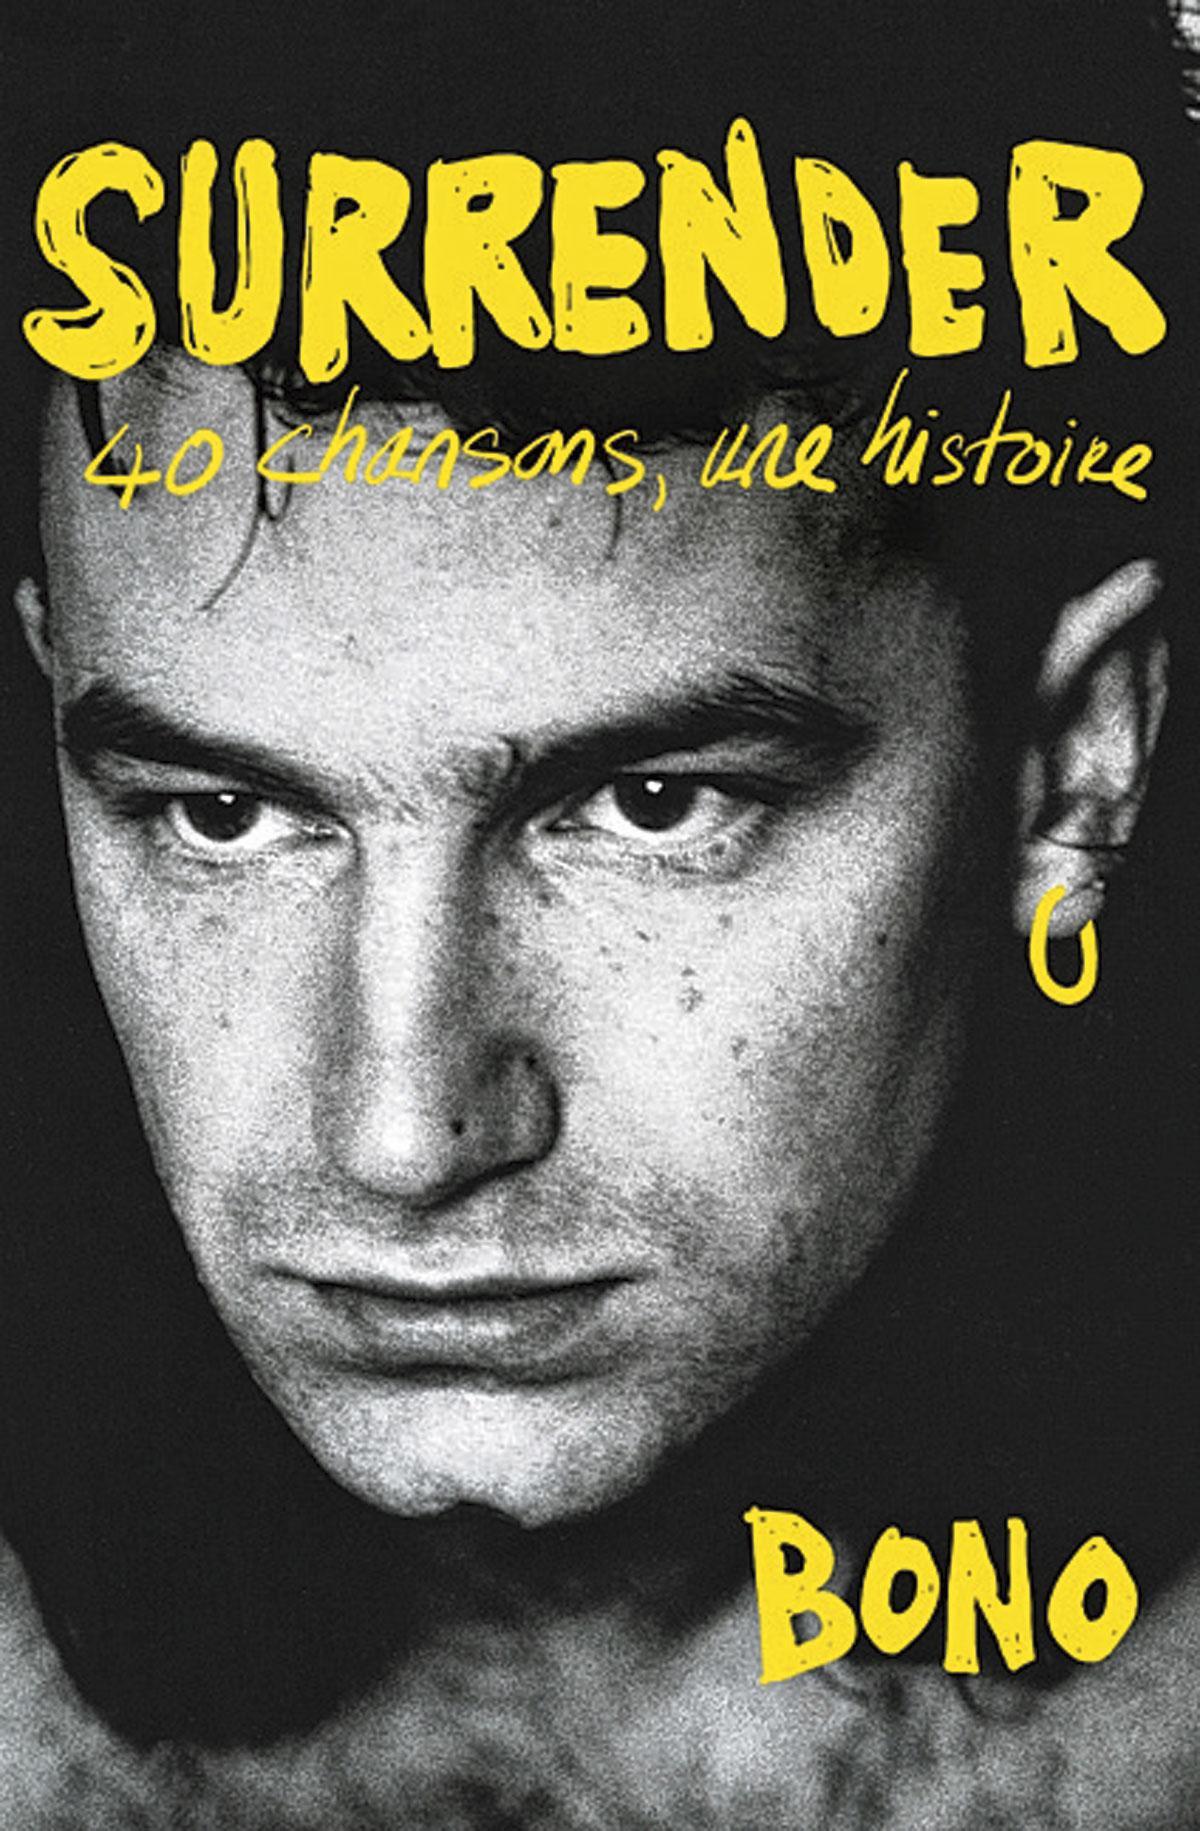 Surrender, 40 chansons, une histoire, de Bono, éditions Fayard, traduit de l’anglais (Irlande) par Julie Sibony, 696 pages.